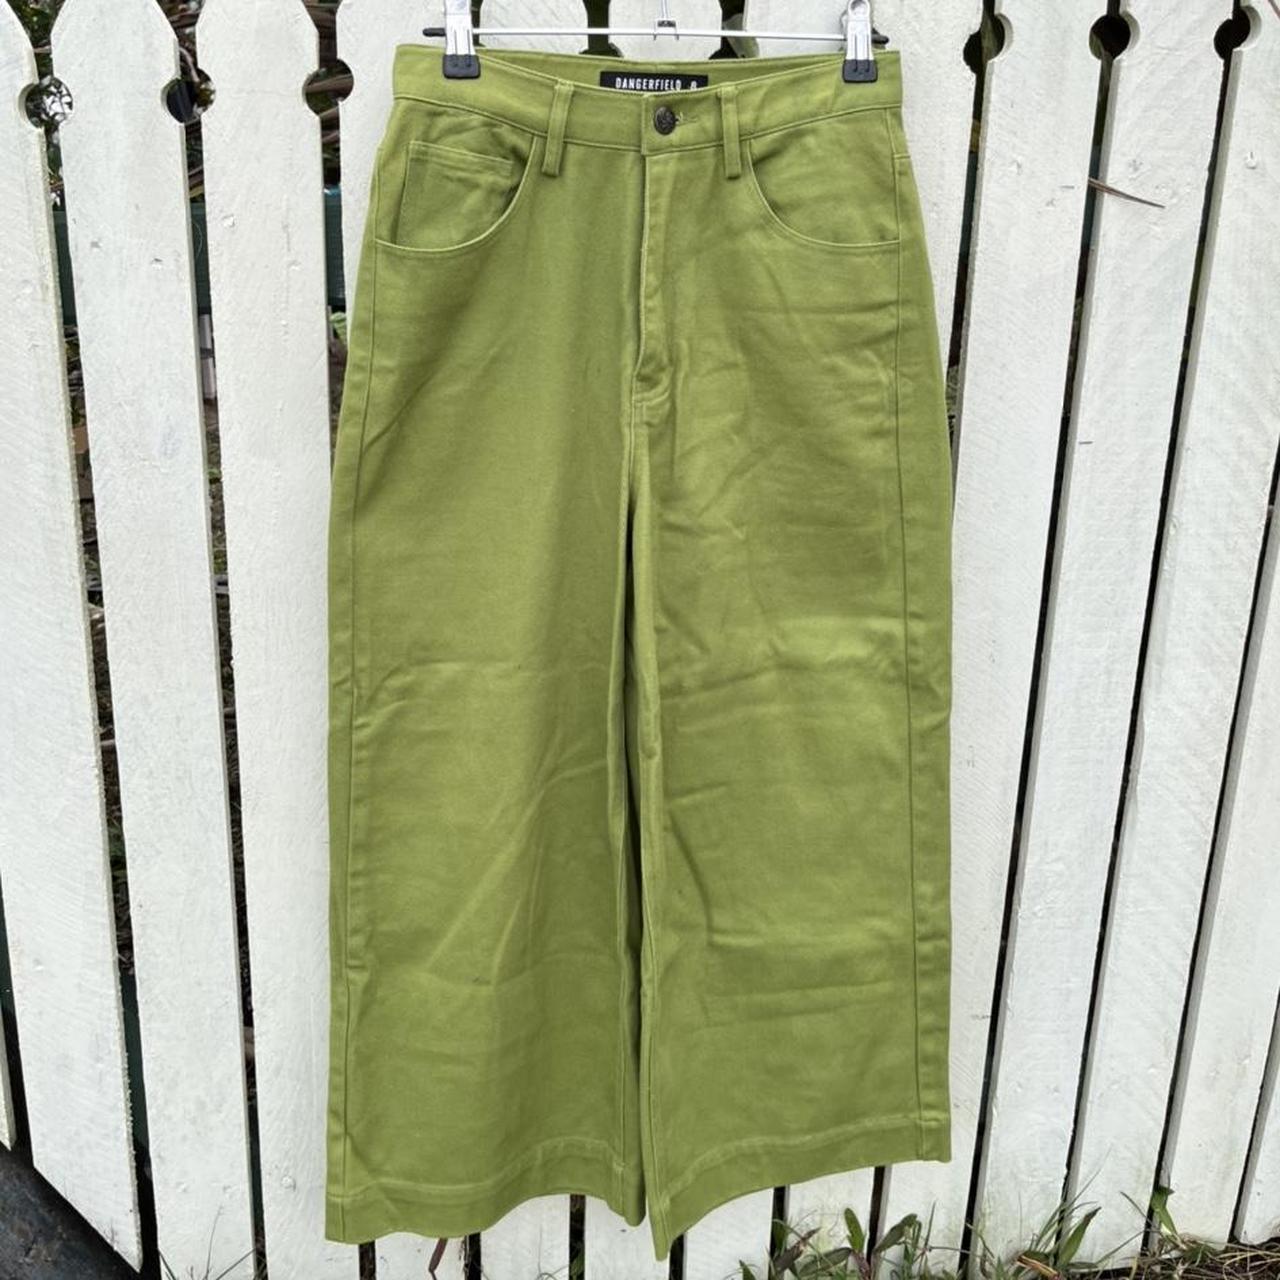 Green Dangerfield Denim Jeans Size 8 Really nice... - Depop